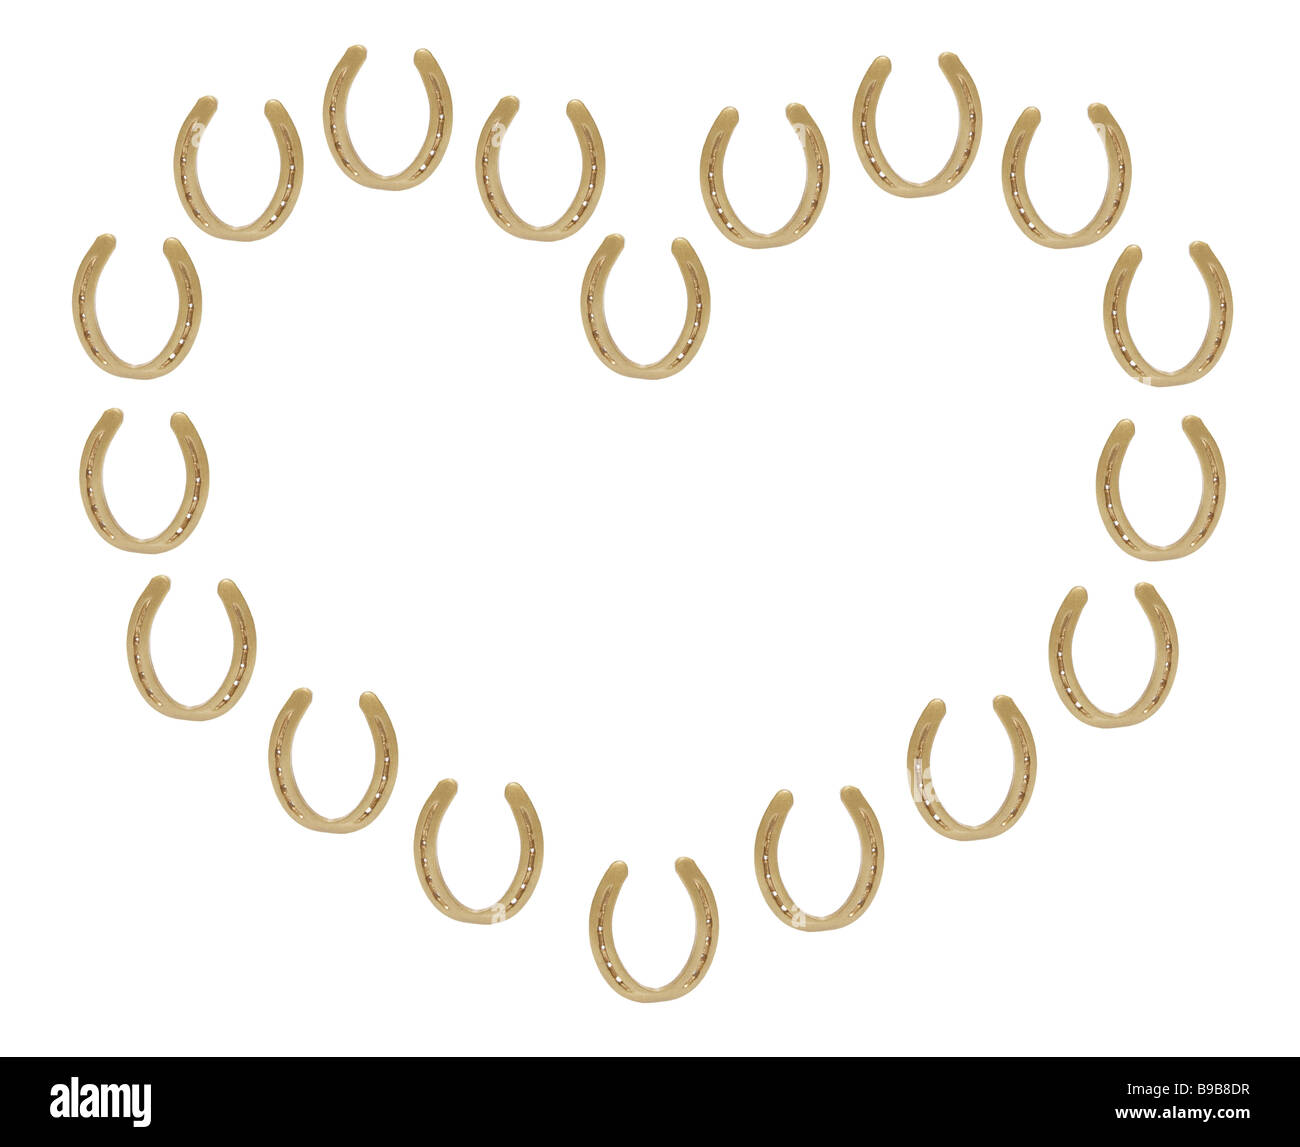 Chaussures de chevaux disposés en forme de coeur Banque D'Images